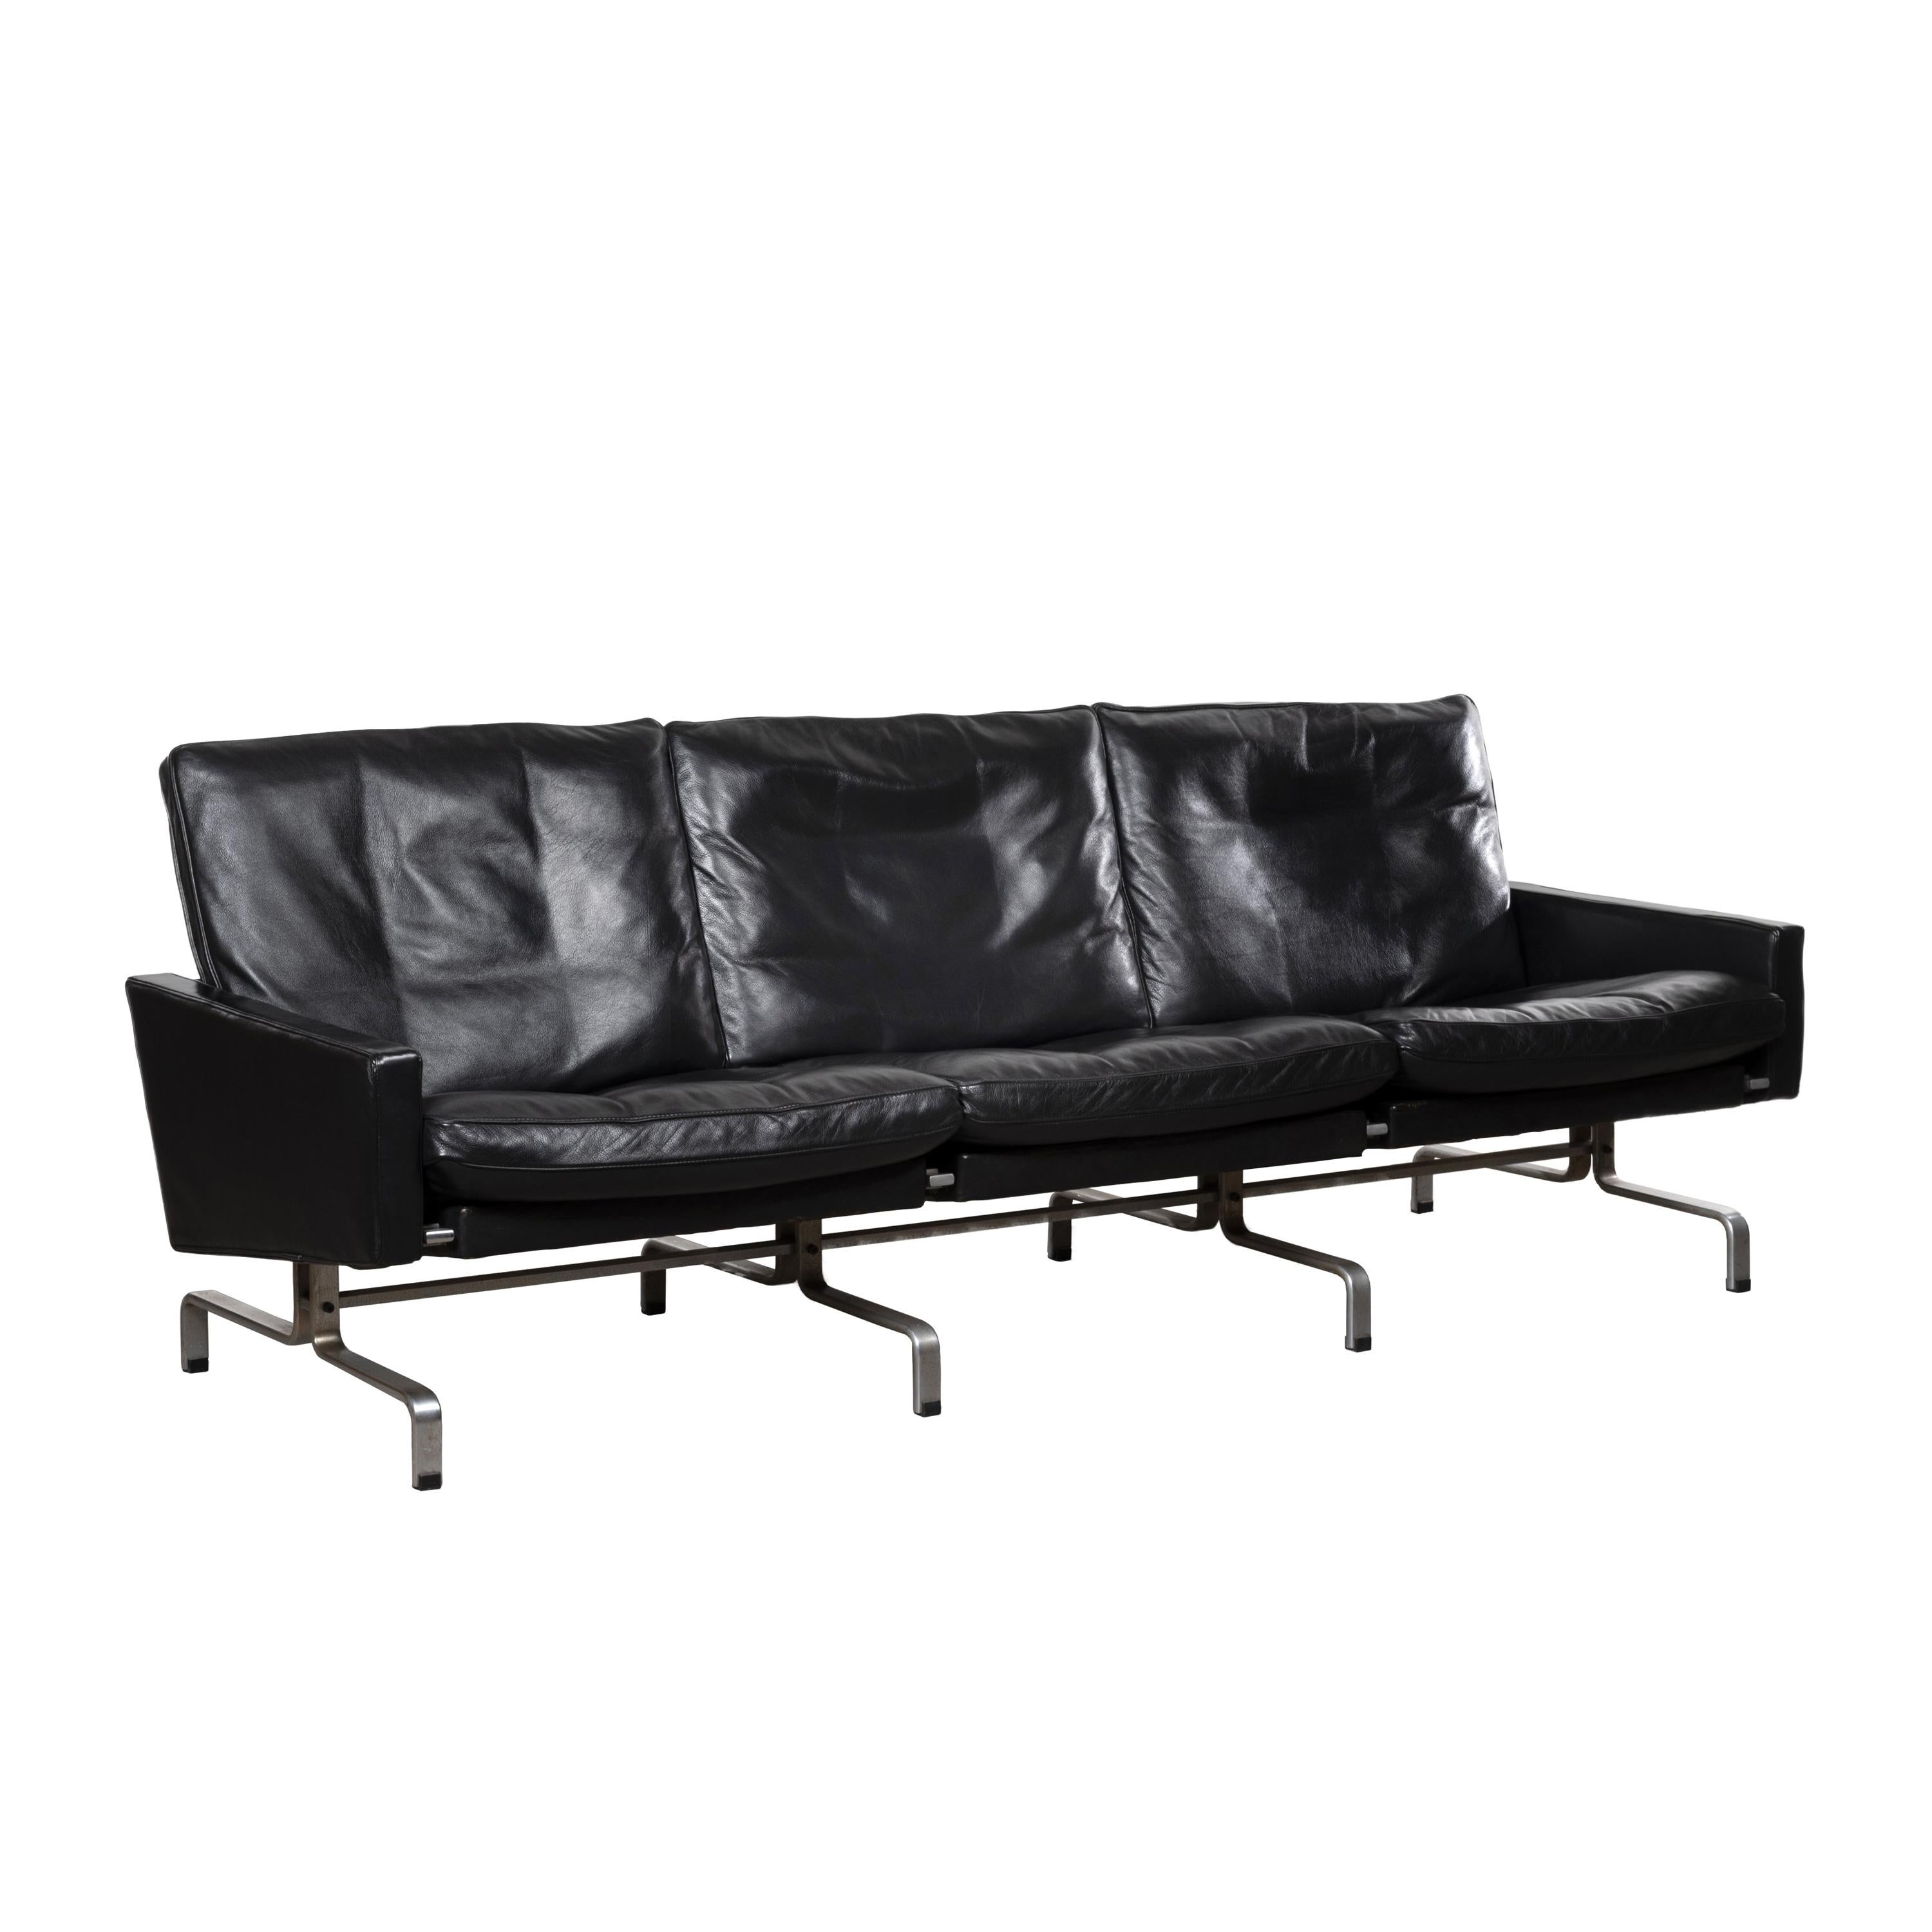 Poul Kjaerholm PK31 Sofa in Black Leather for E Kold Christensen, Denmark